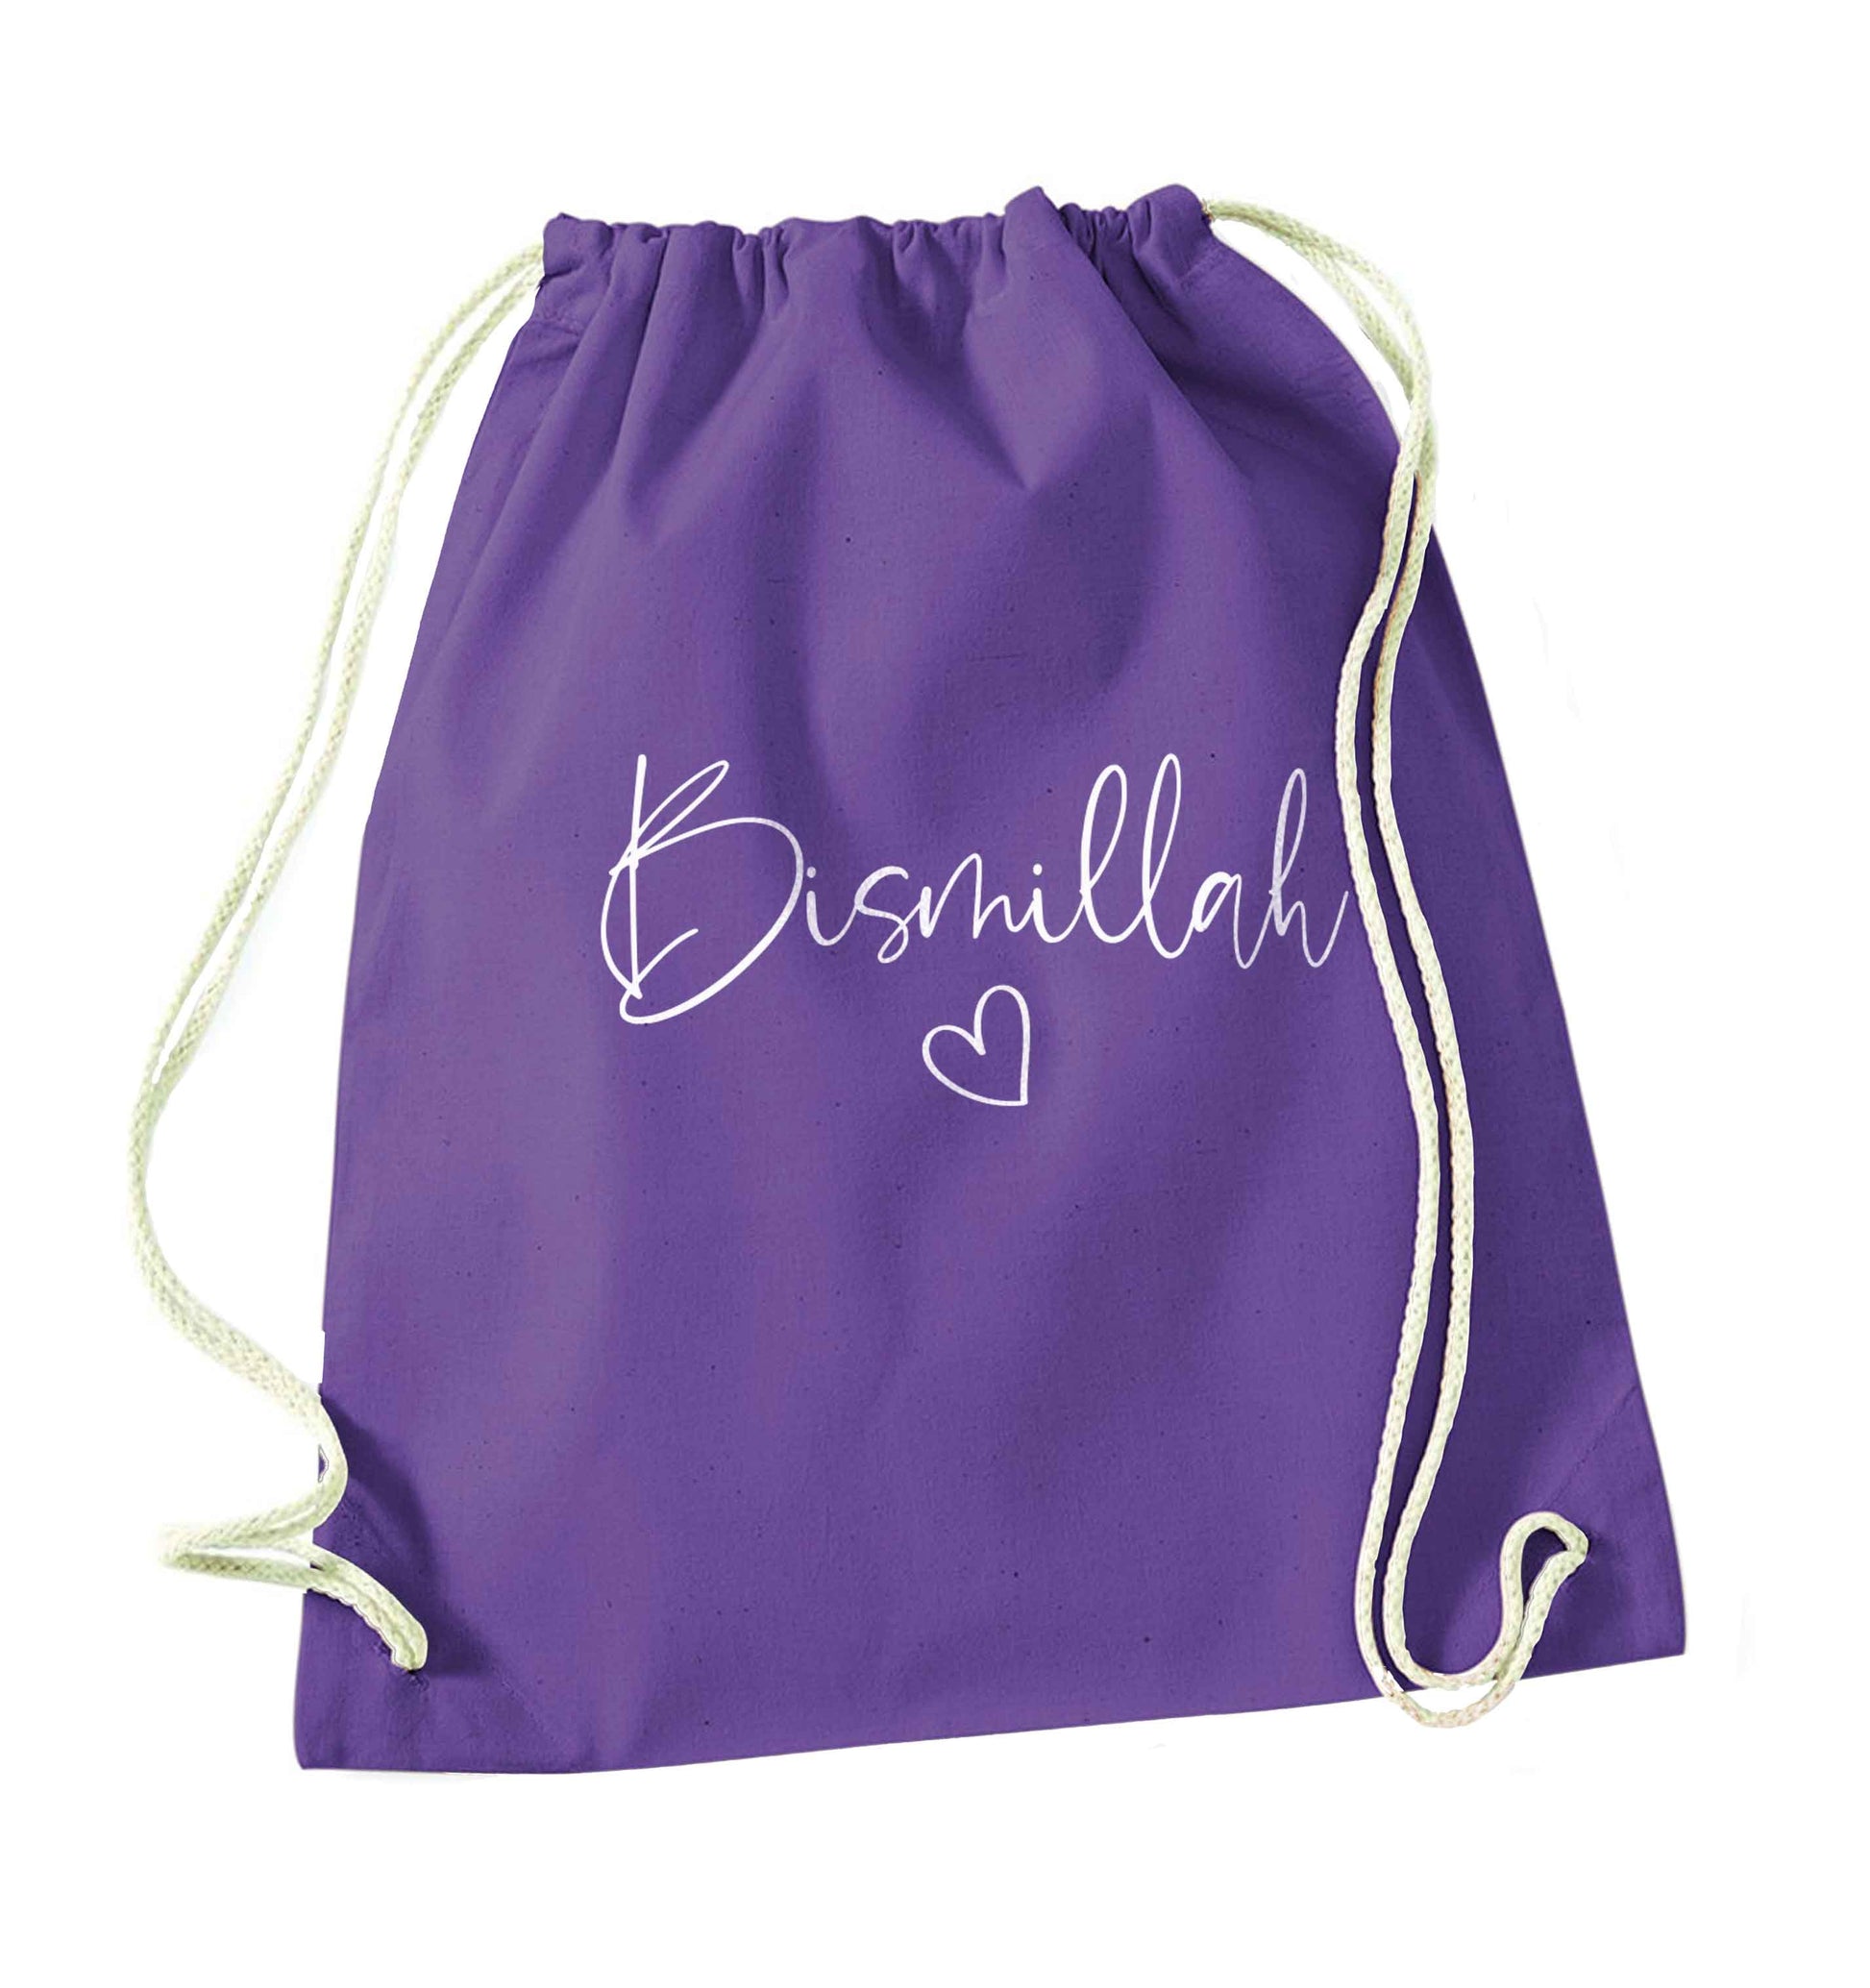 Bismillah purple drawstring bag